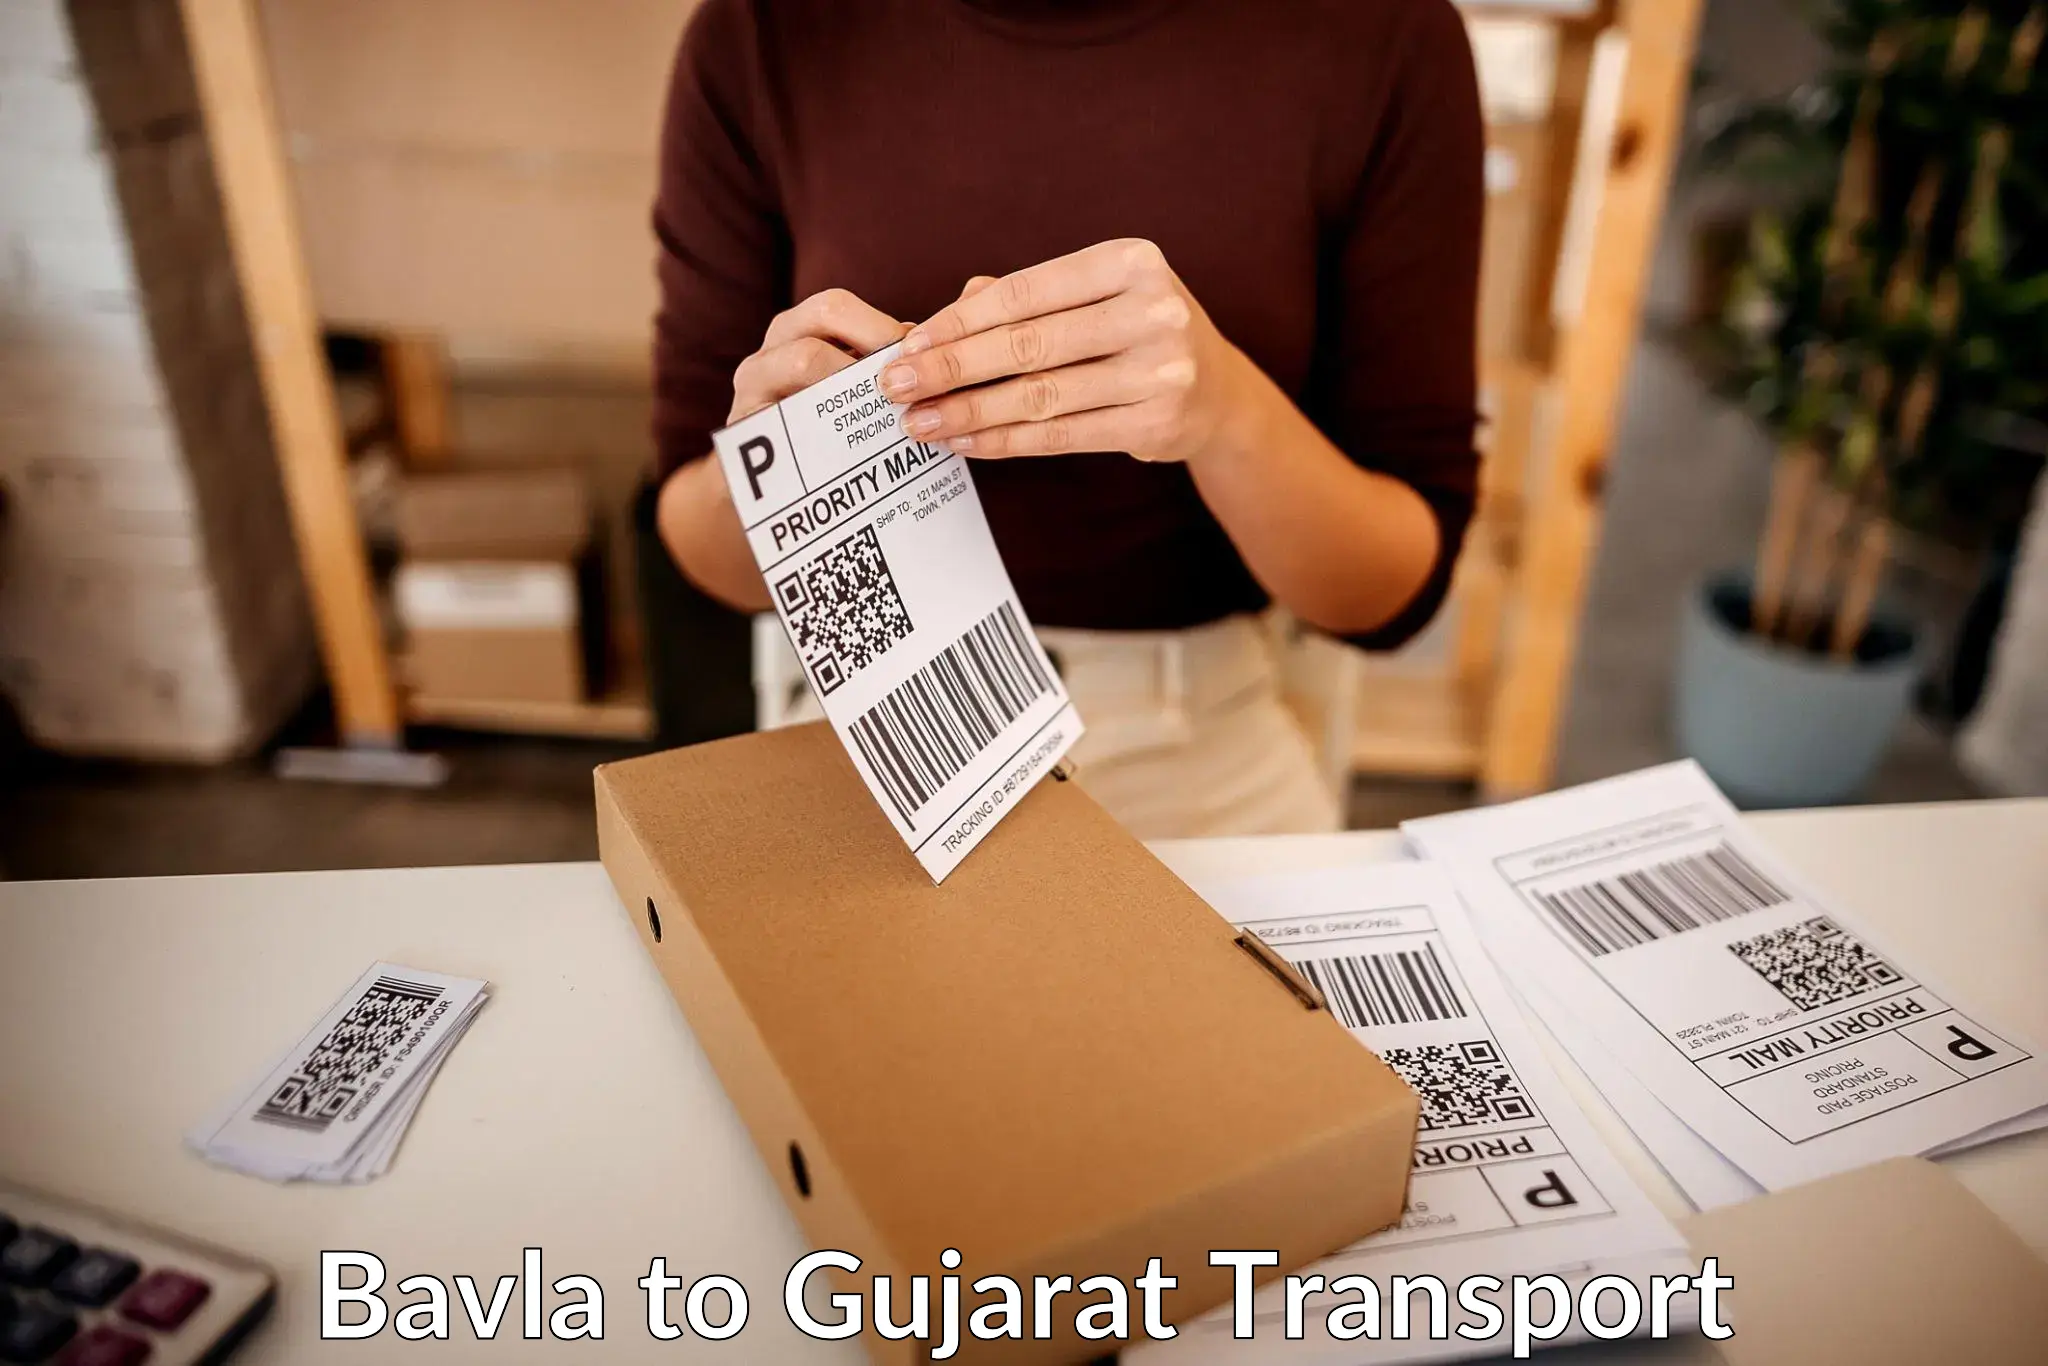 Road transport online services Bavla to Bardoli